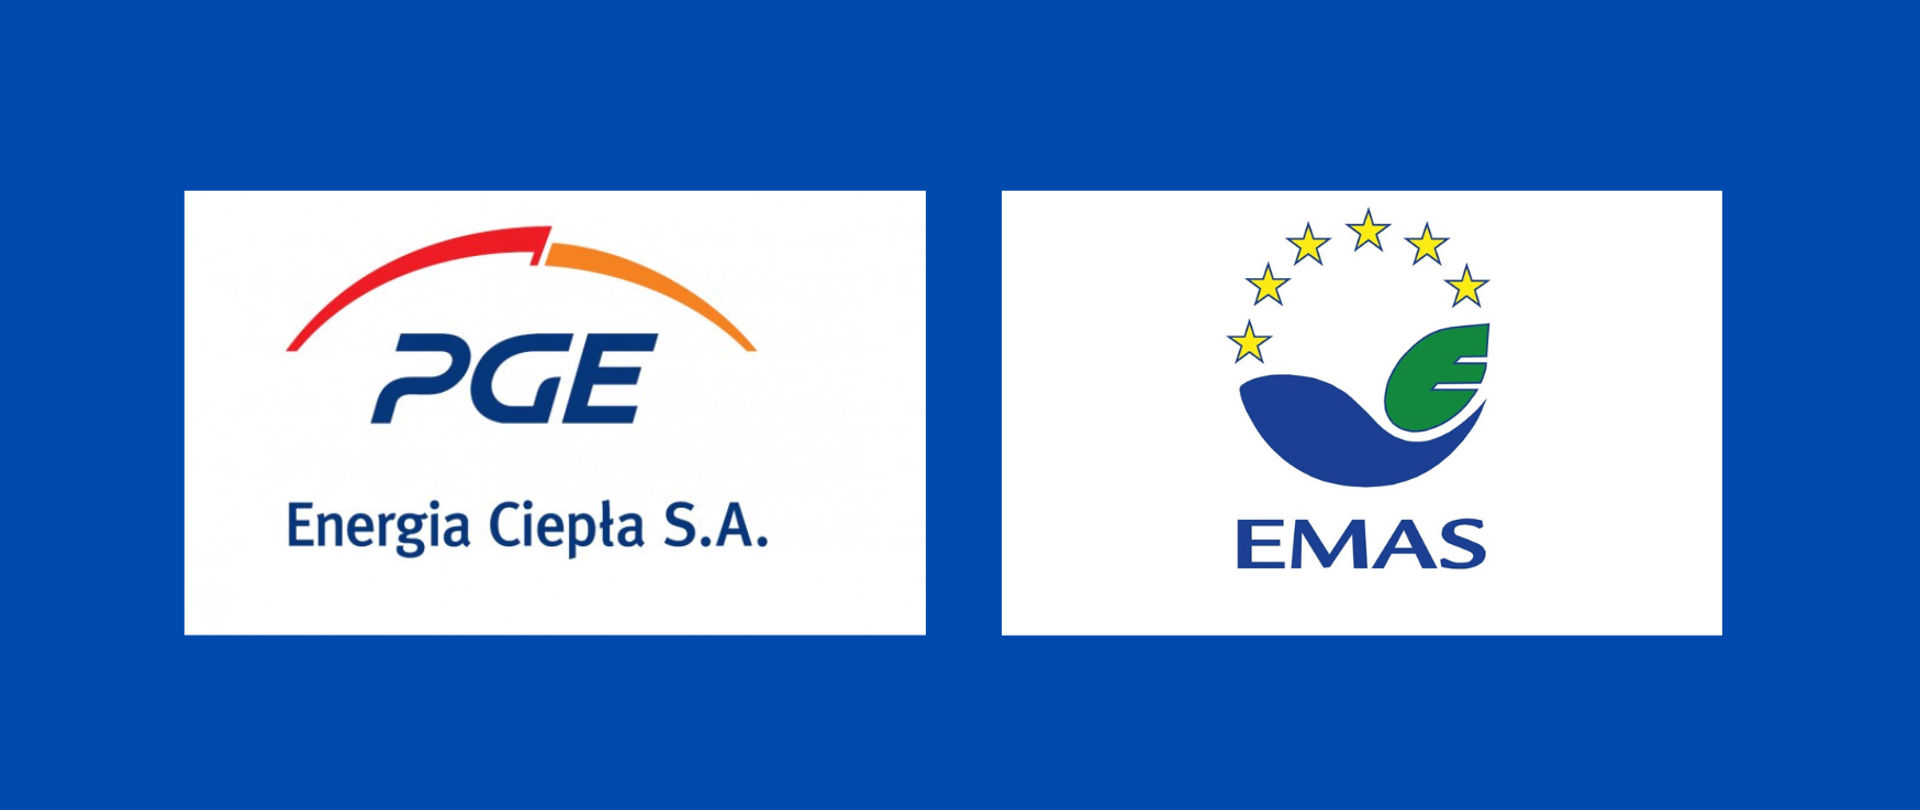 Na niebieskim tle dwa kolorowe logotypy. Po lewej logotyp z podpisem PGE Energia Ciepła S.A., a po prawej logotyp z podpisem EMAS.